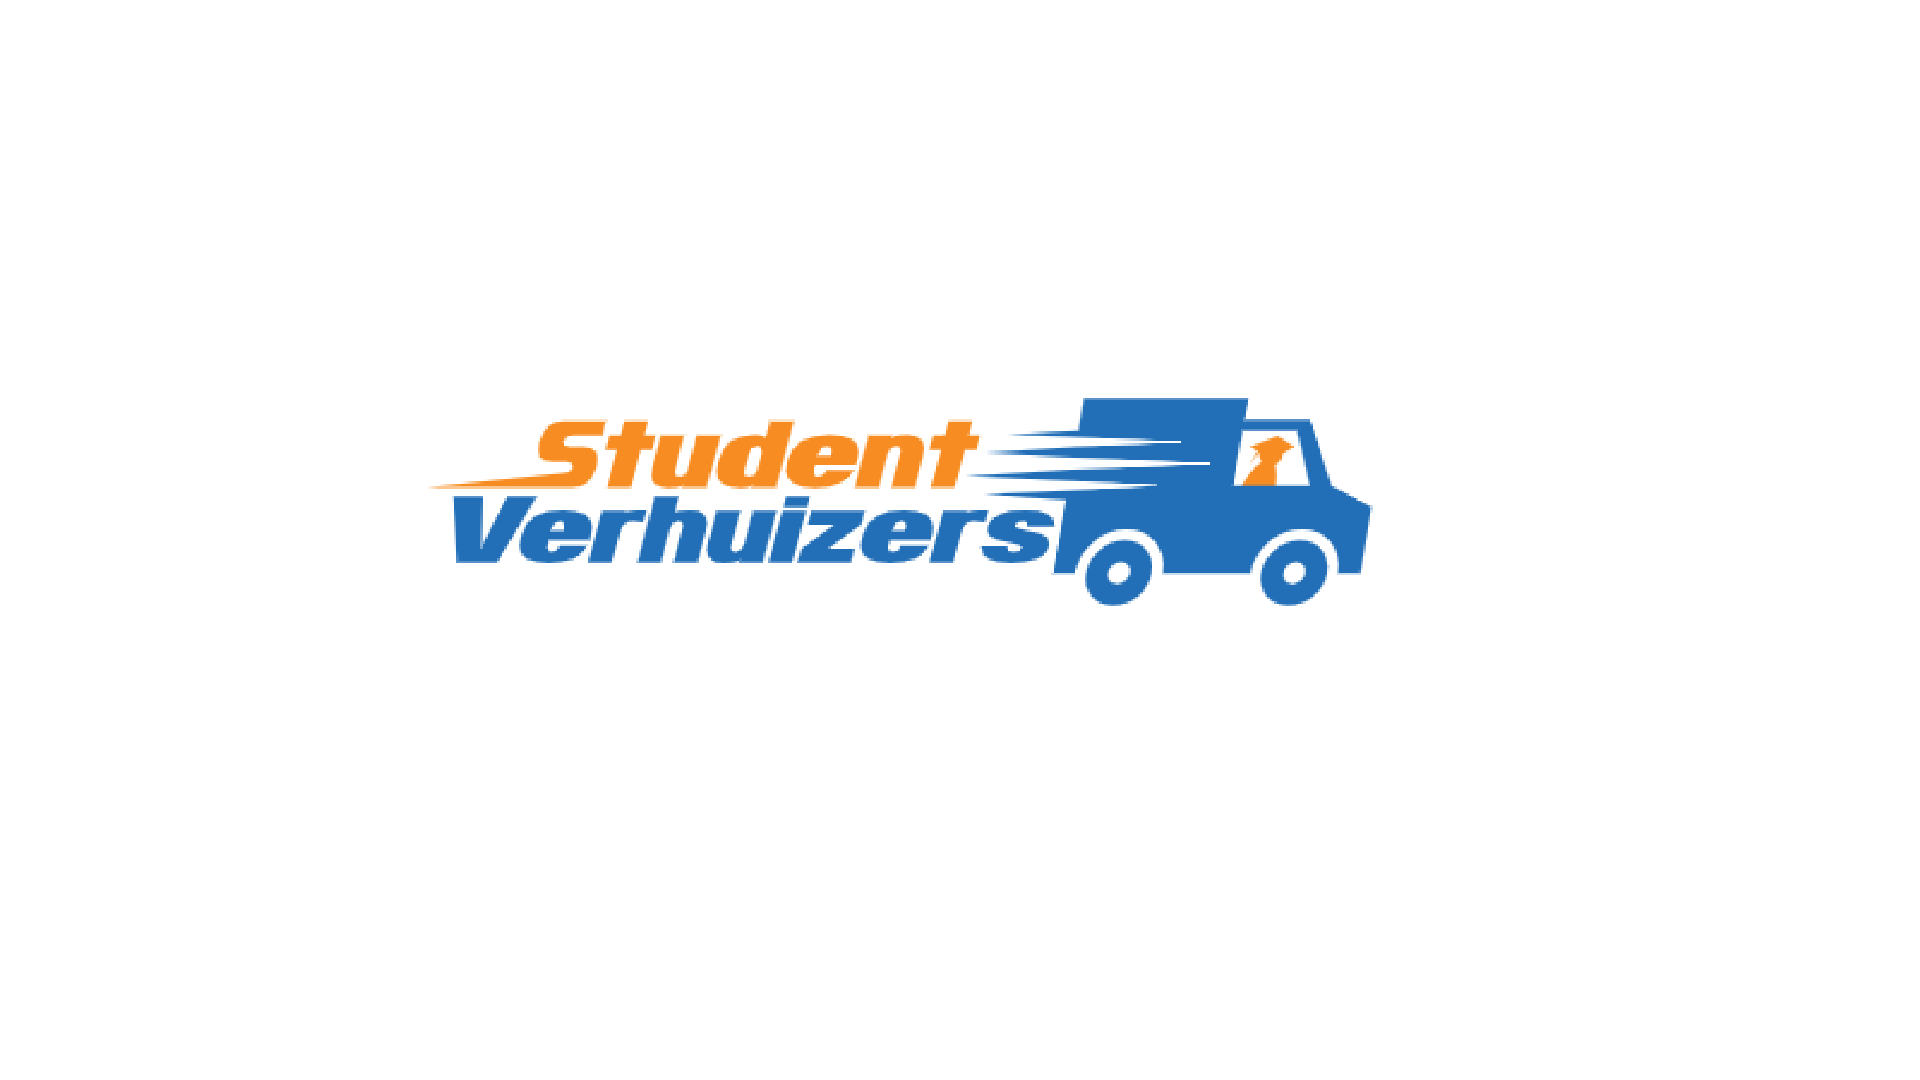 Studentverhuizers logo